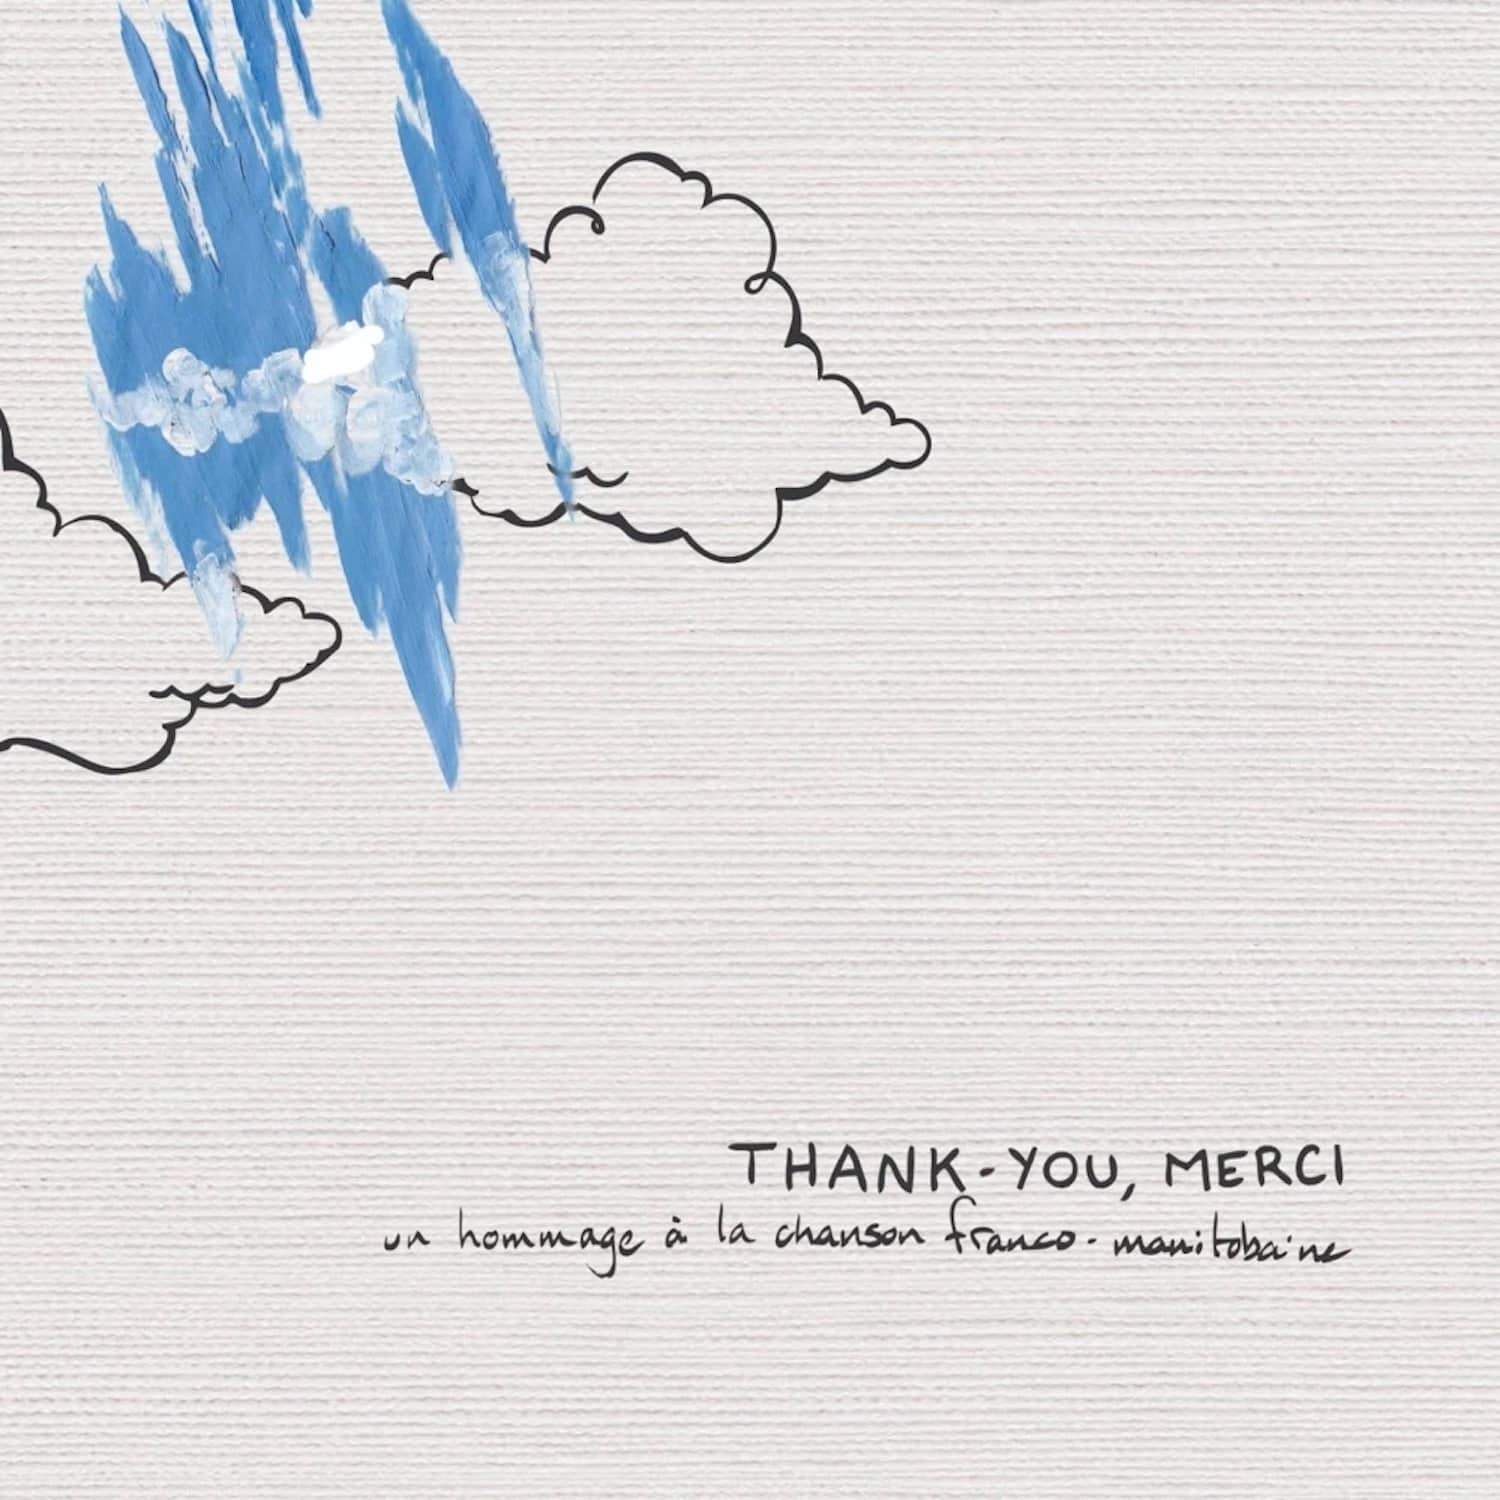 Thank-you, merci: un hommage à la chanson franco-manitobaine